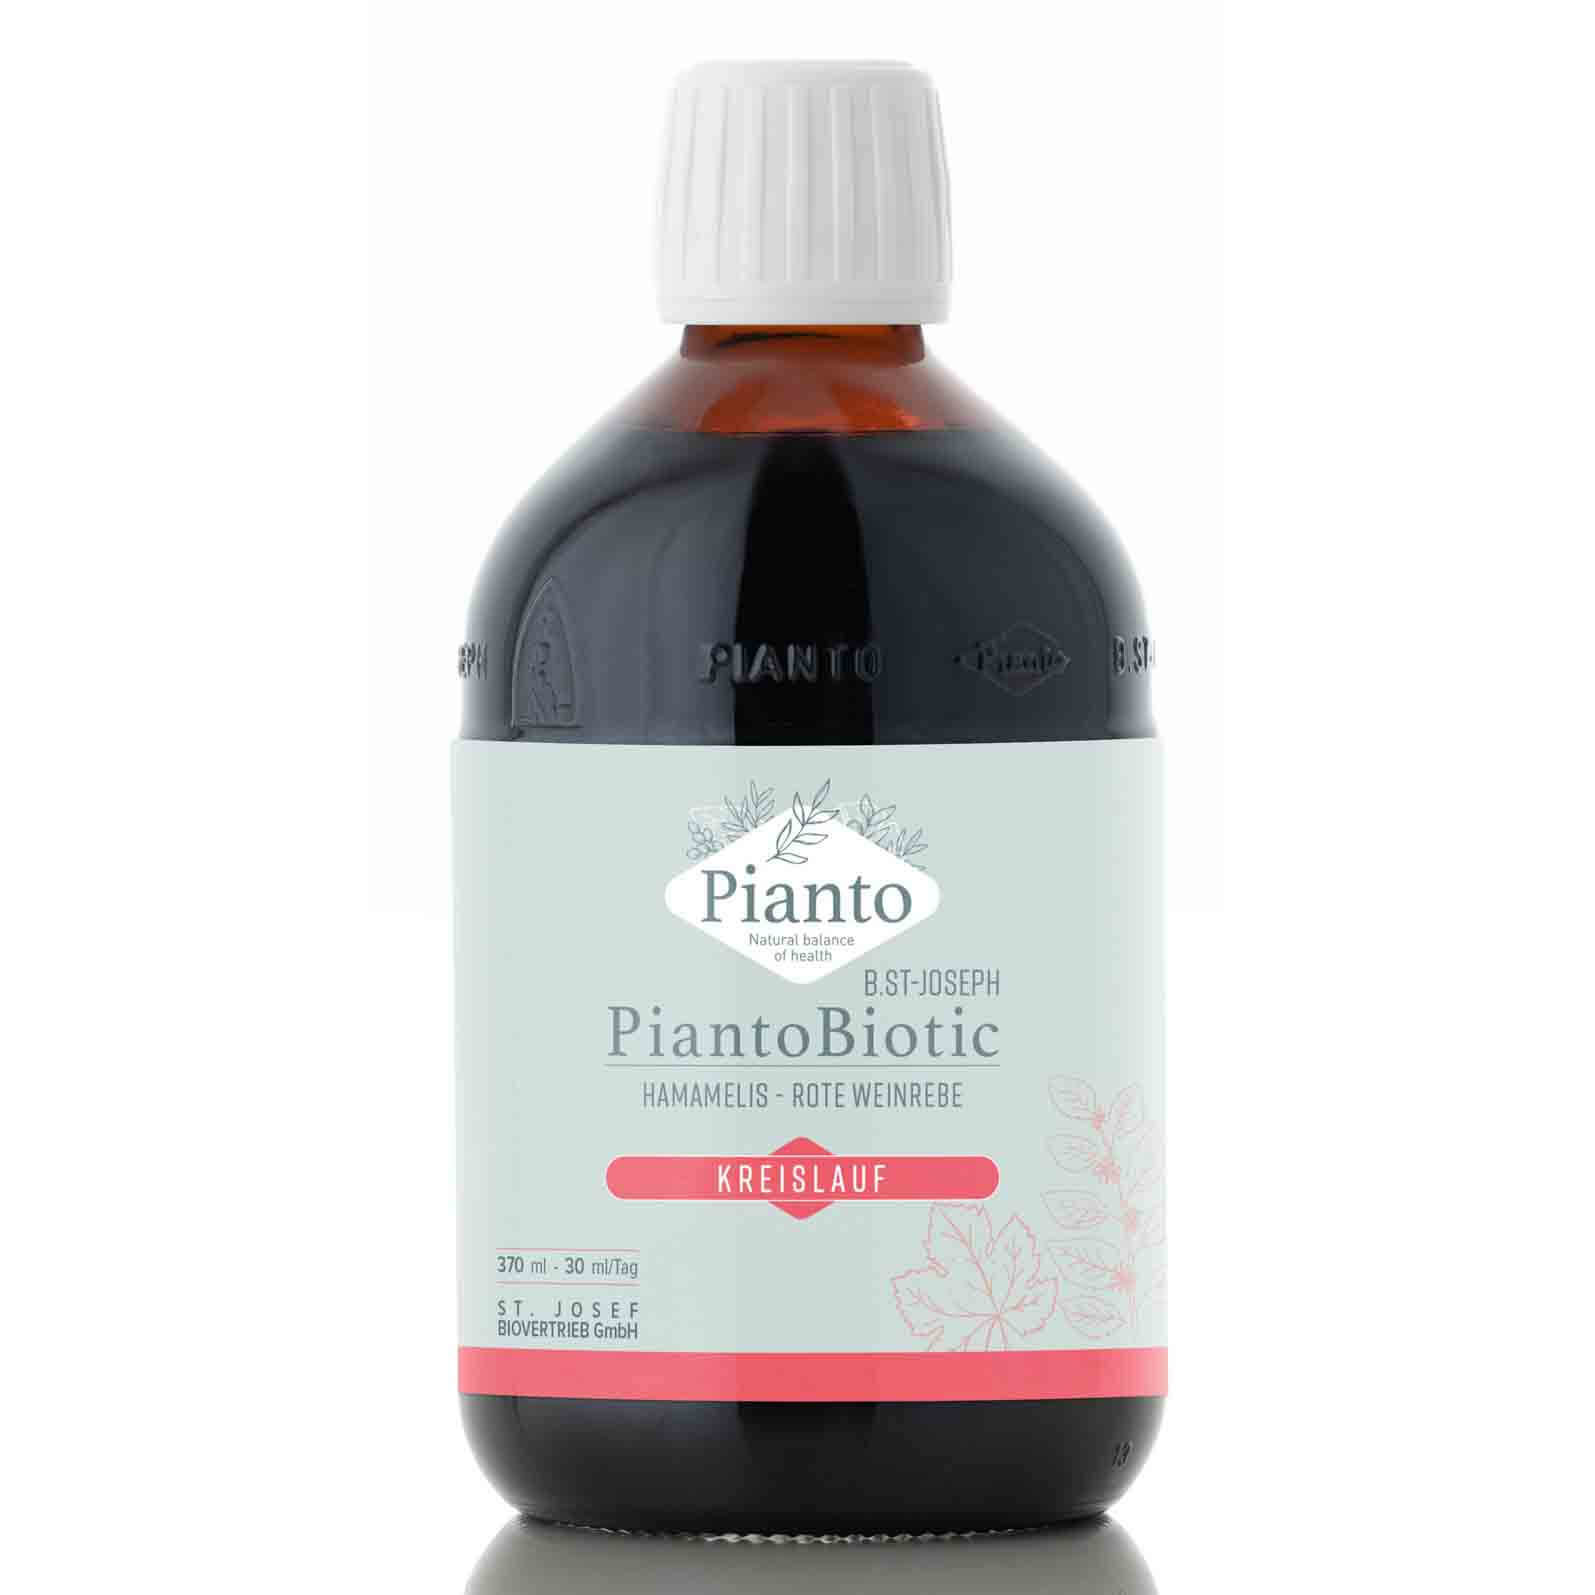 Pianto Biotic Kreislauf - SB für eine bessere Durchblutung